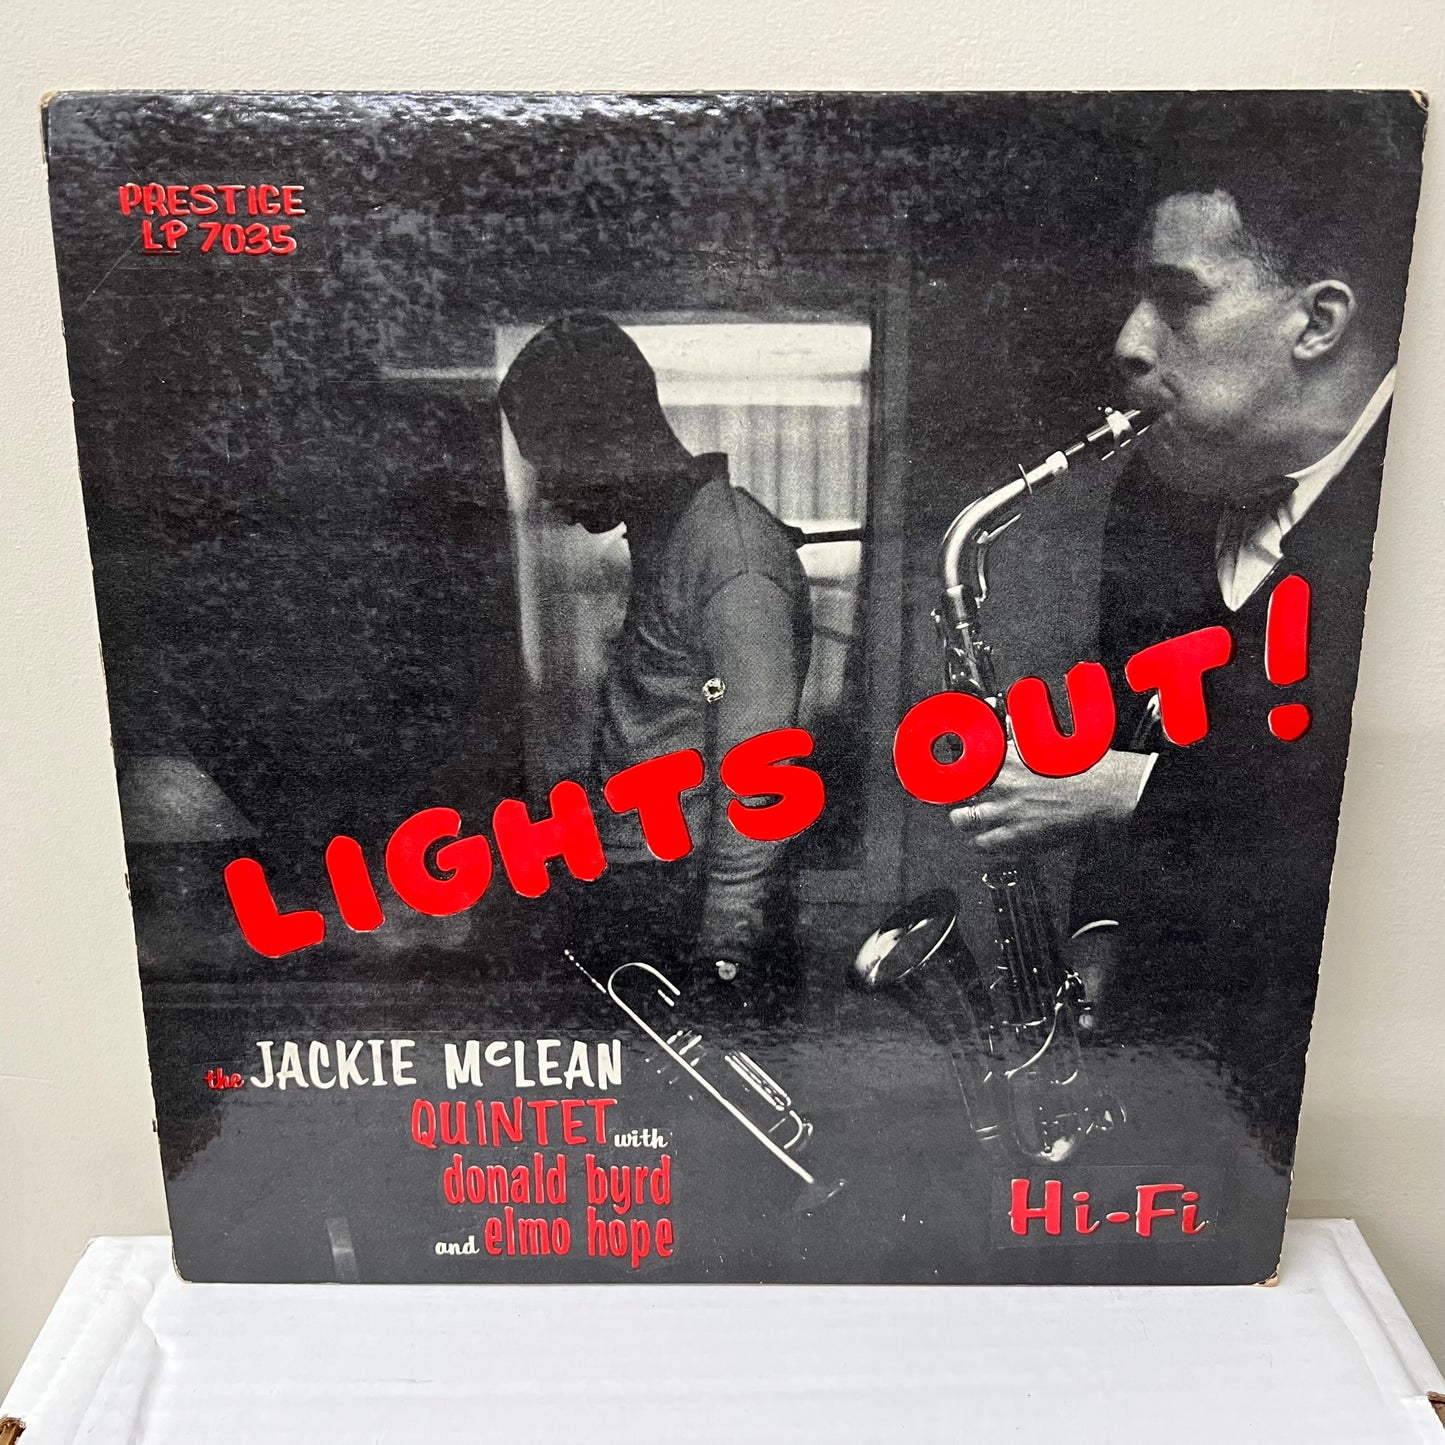 El quinteto de Jackie McLean con Donald Byrd y Elmo Hope – ¡Apaga las luces! - LP de prestigio